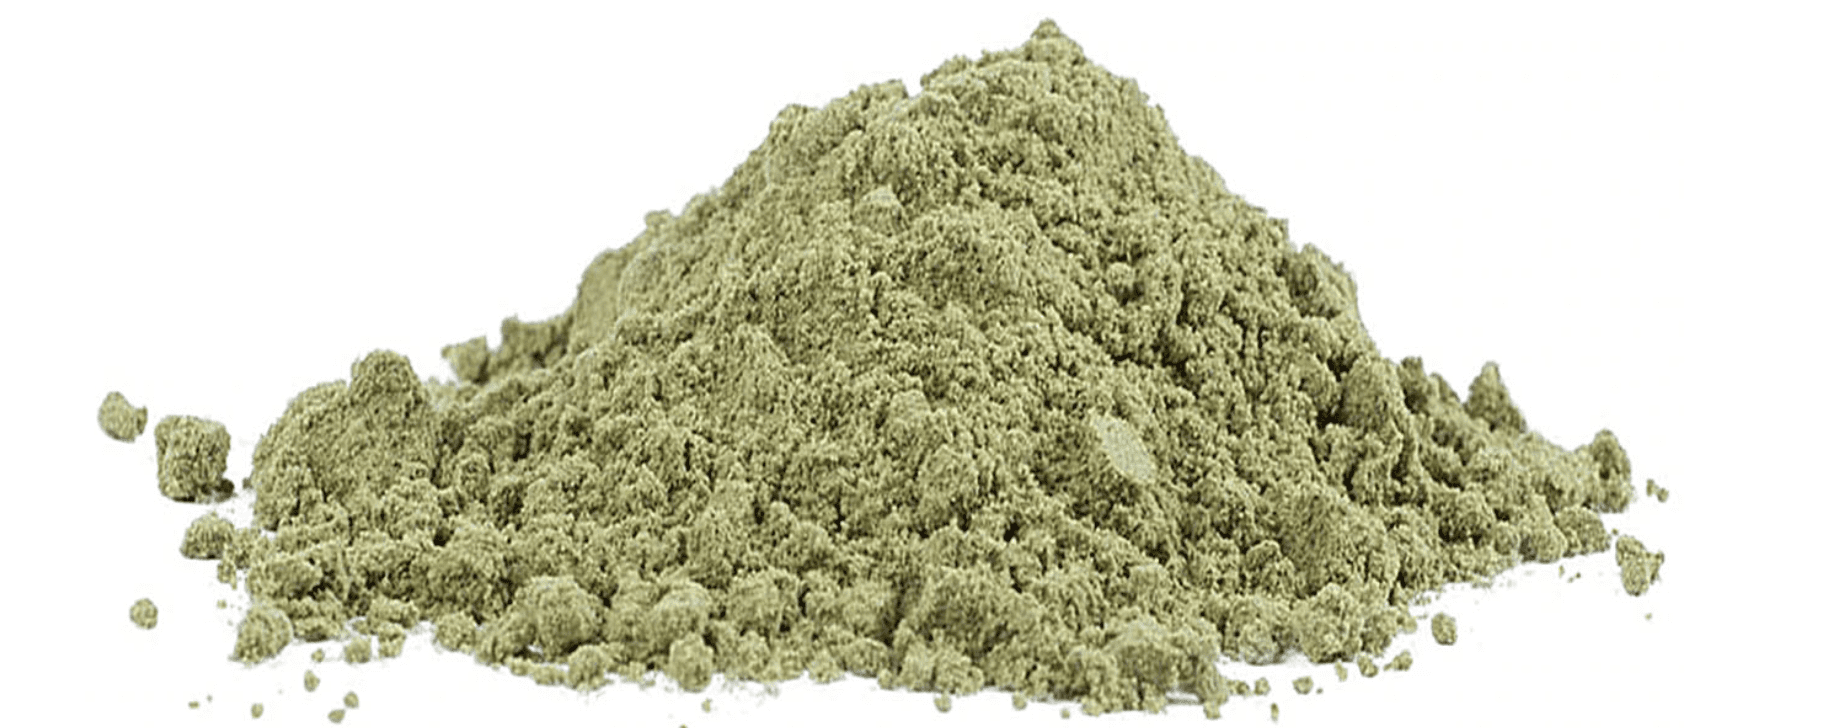 Co to jest Kief czyli pyłek marihuany ?